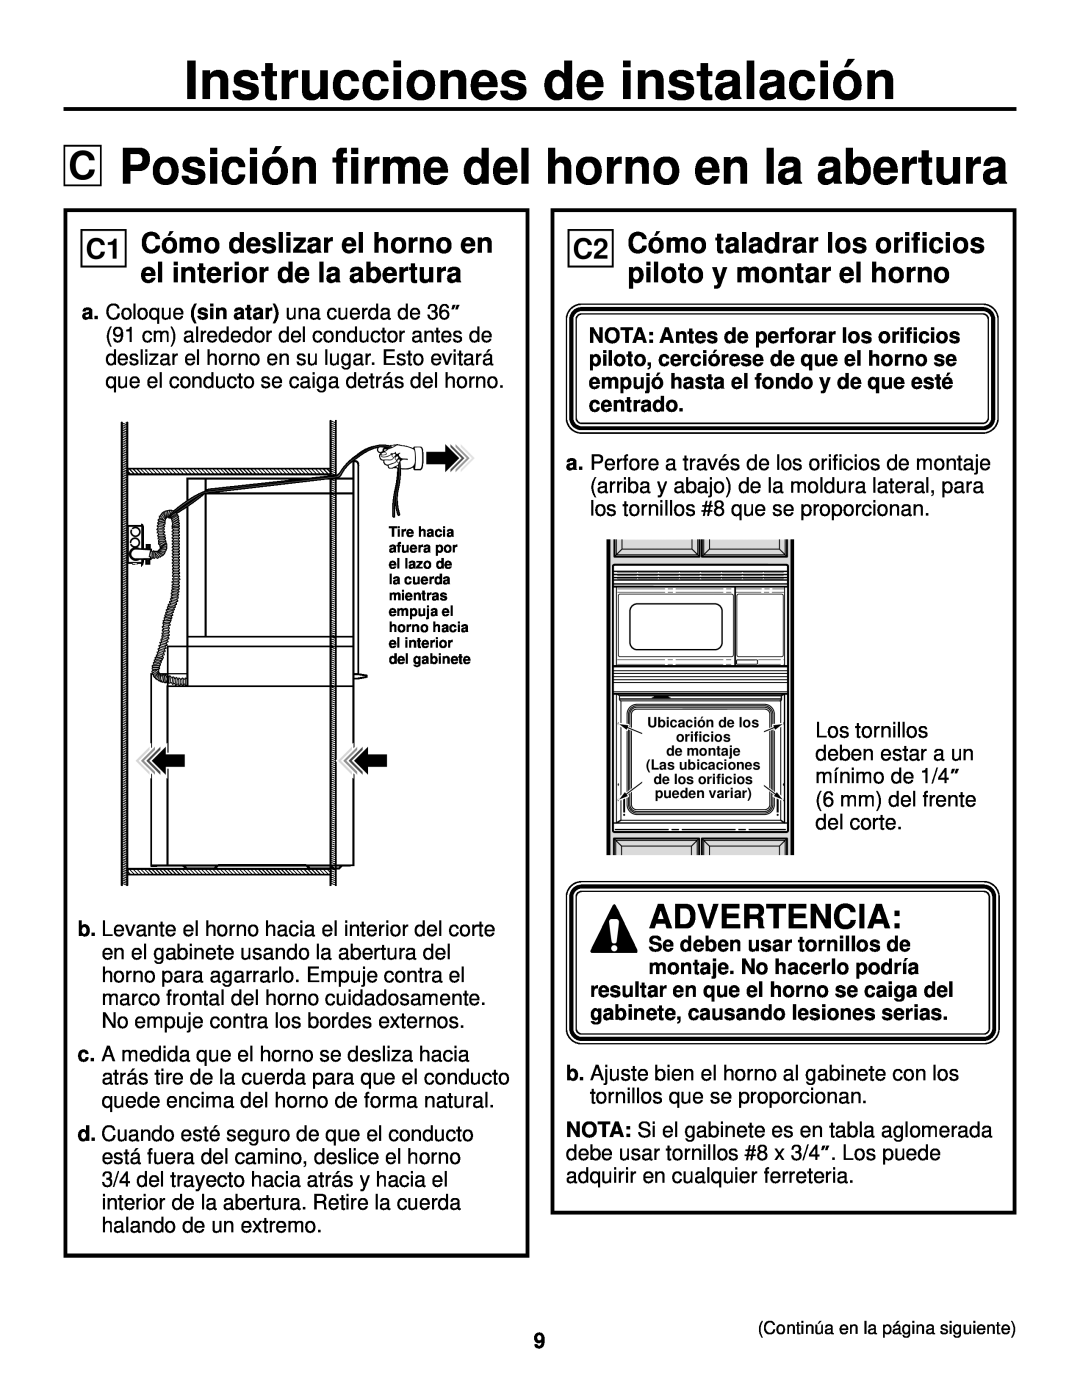 GE JTP90, JKP90 installation instructions Posición firme del horno en la abertura, Instrucciones de instalación, Advertencia 